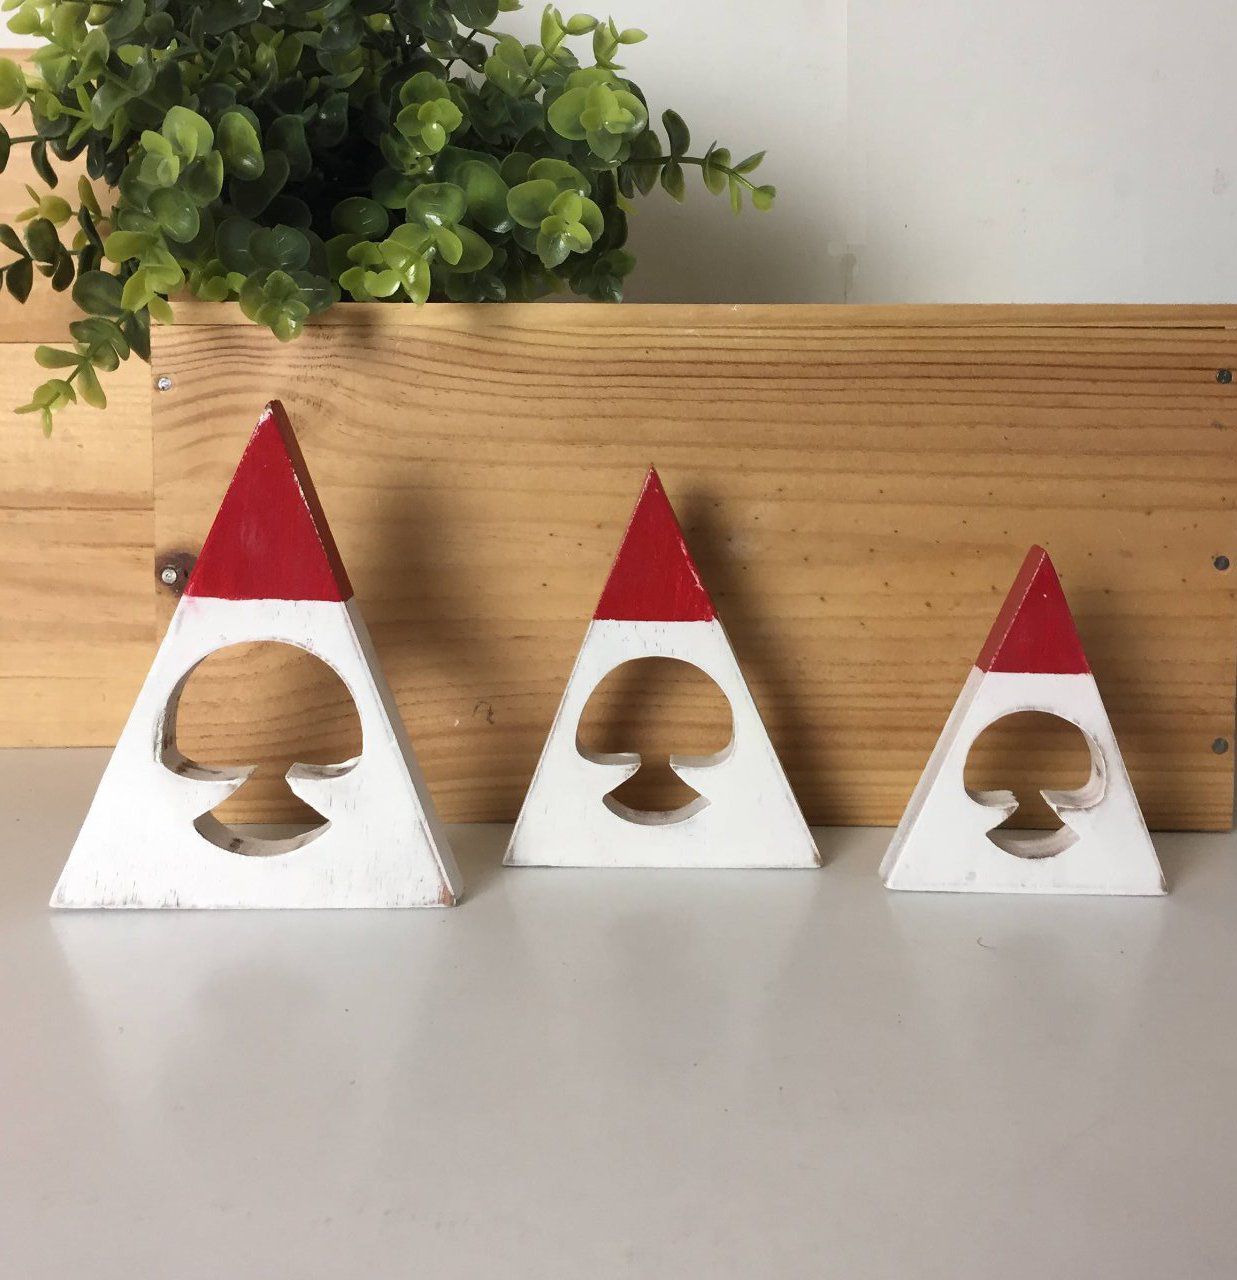 Lot de 3 pères Noël en bois blanc et rouge, patinés, vernis.